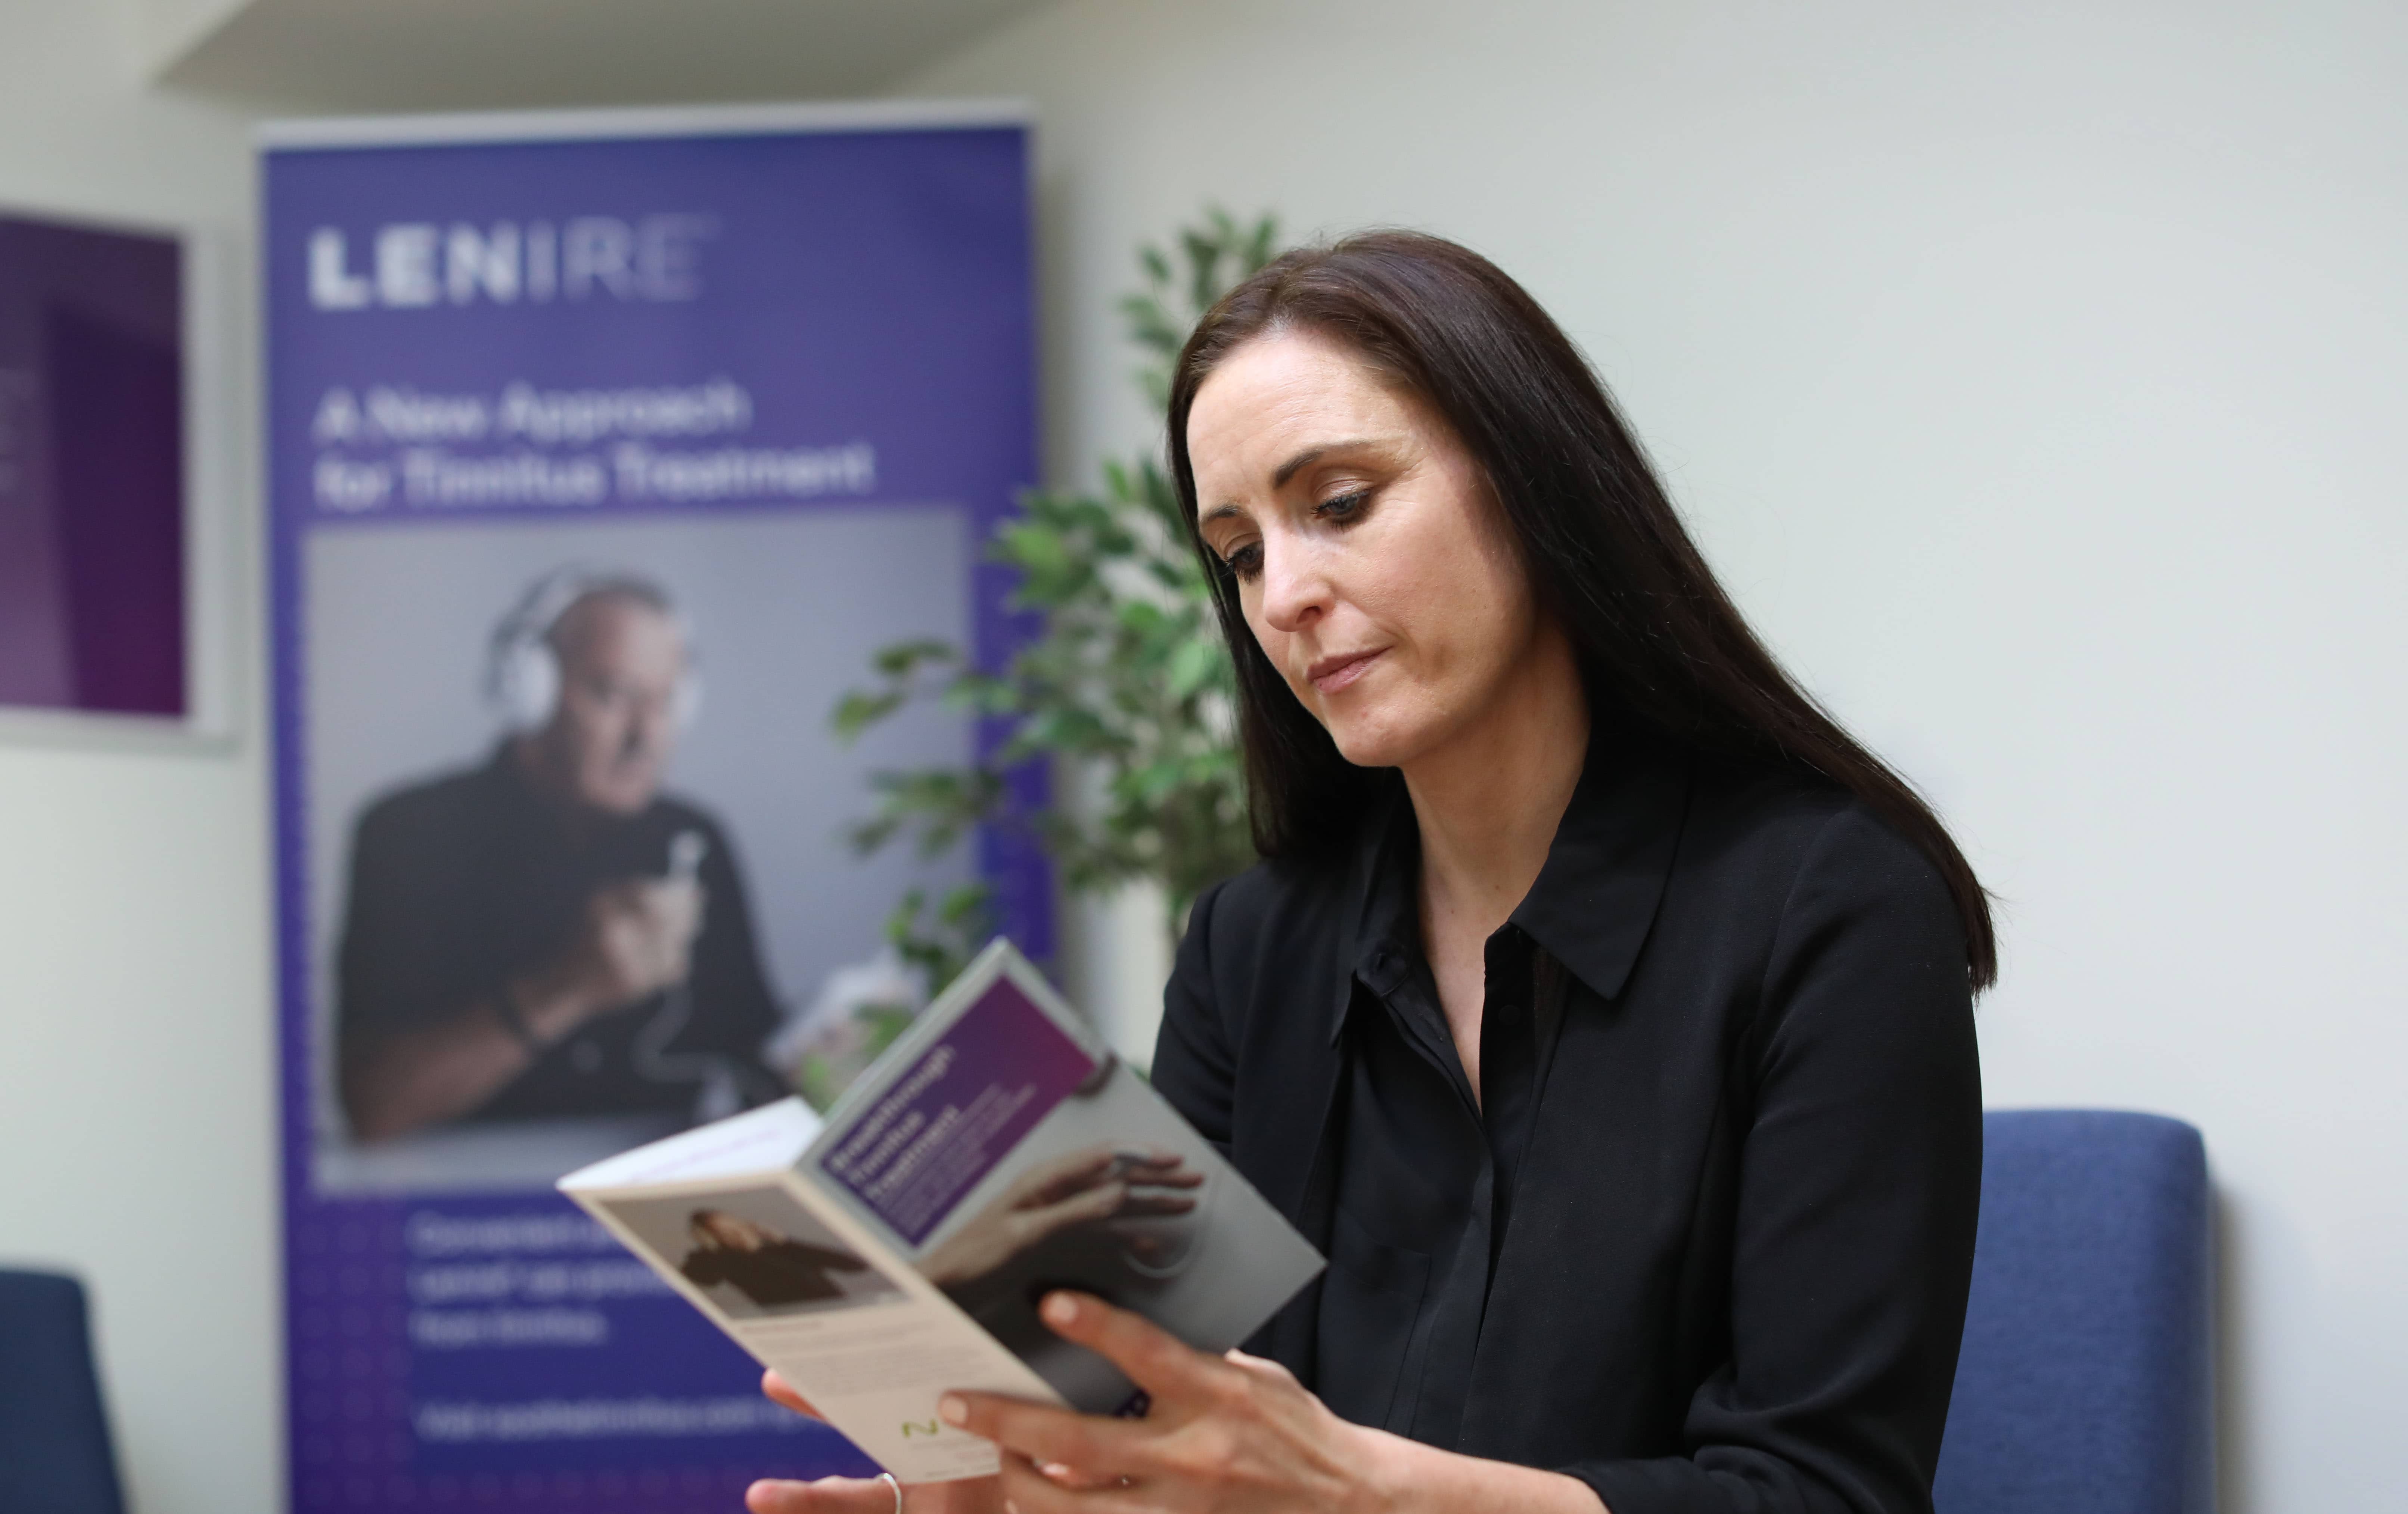 Eine Frau informiert sich in einem Flyer über die Ergebnisse der klinischen Studien.